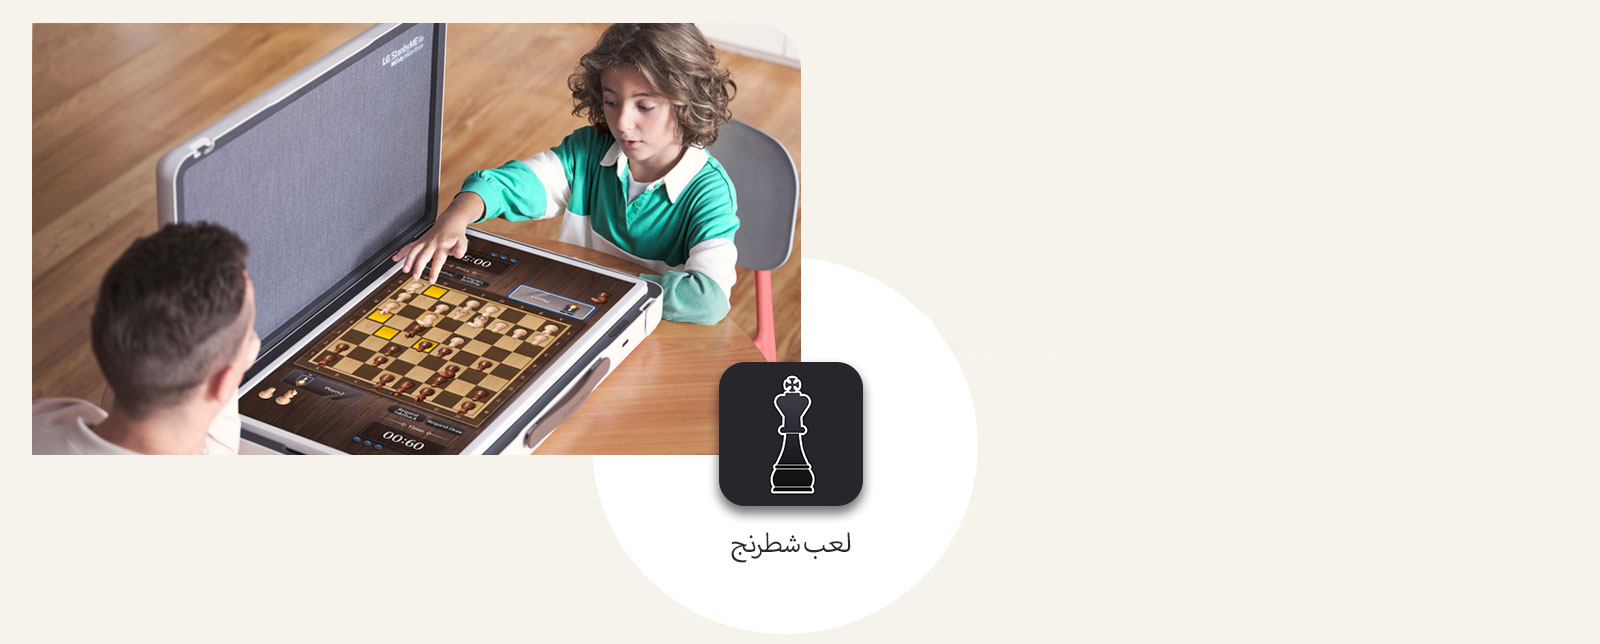 أب وابنه يلعبان شطرنج عبر شاشة LG StanbyME Go. في منتصف الصورة تظهر أيقونة لعبة الشطرنج.